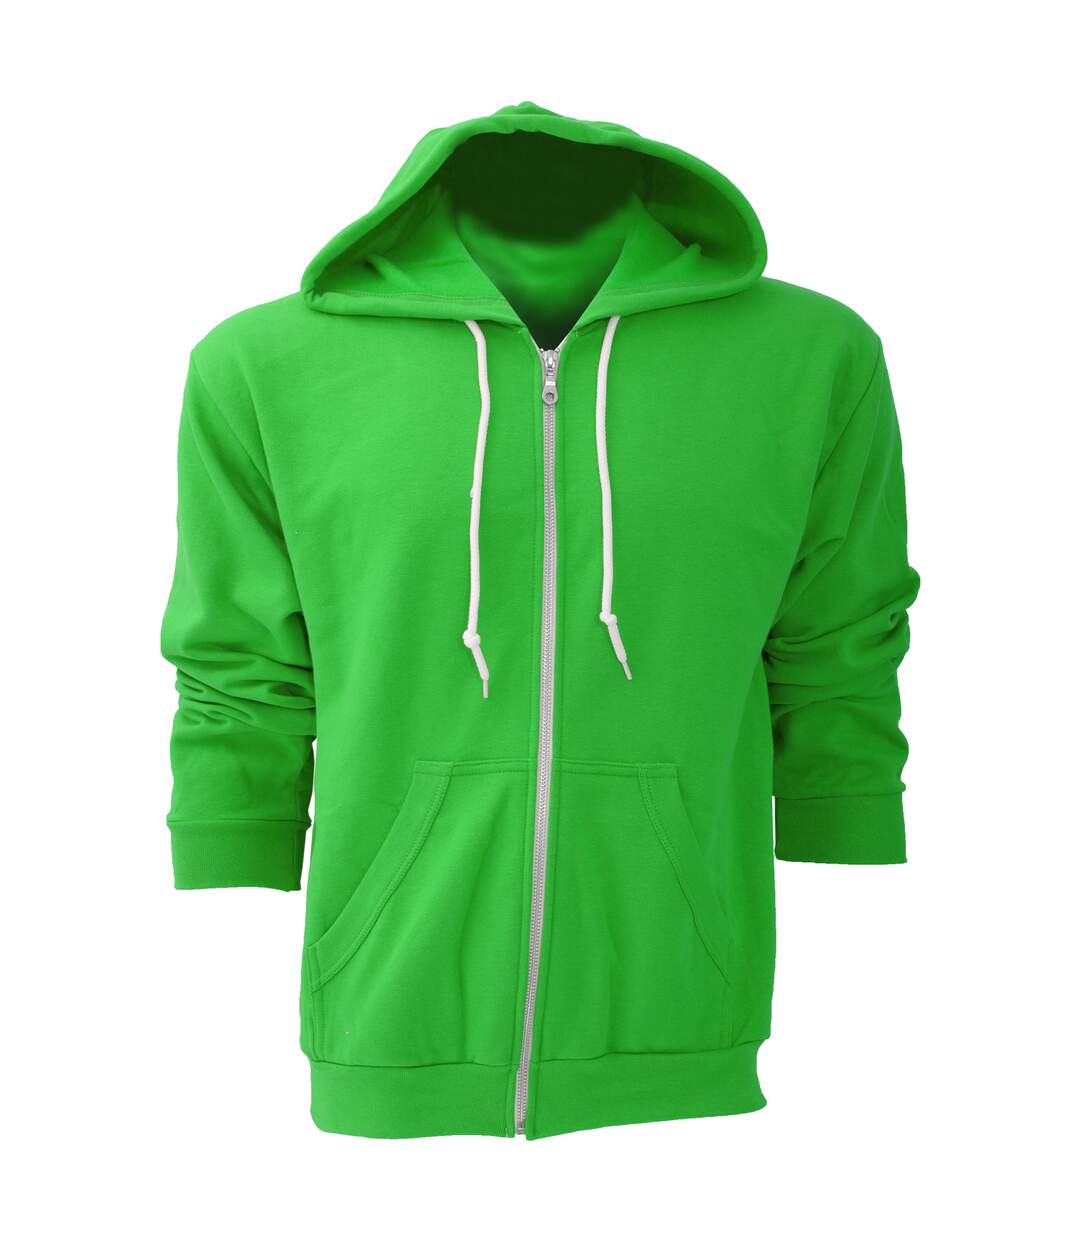 Anvil - Sweatshirt à capuche et fermeture zippée - Homme (Vert pomme) - UTRW158